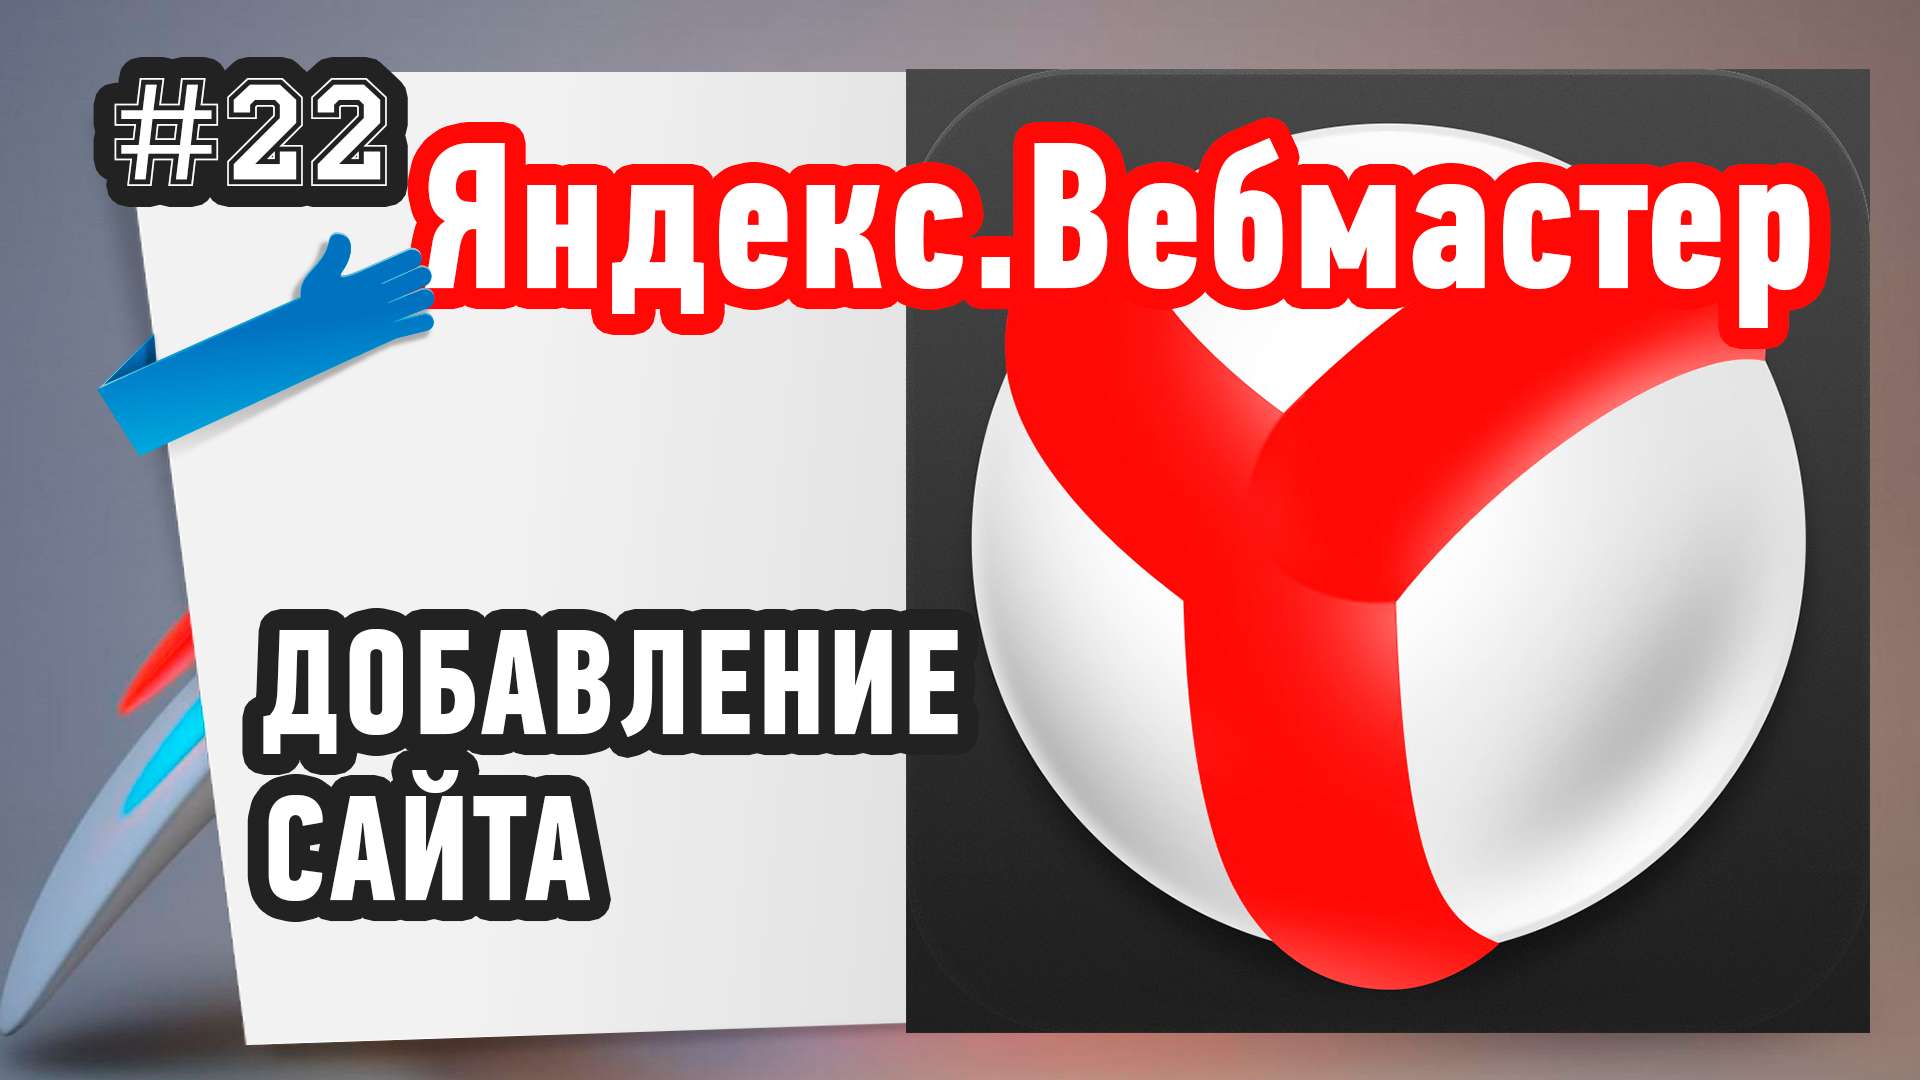 Как добавить сайт в Яндекс.Вебмастер?